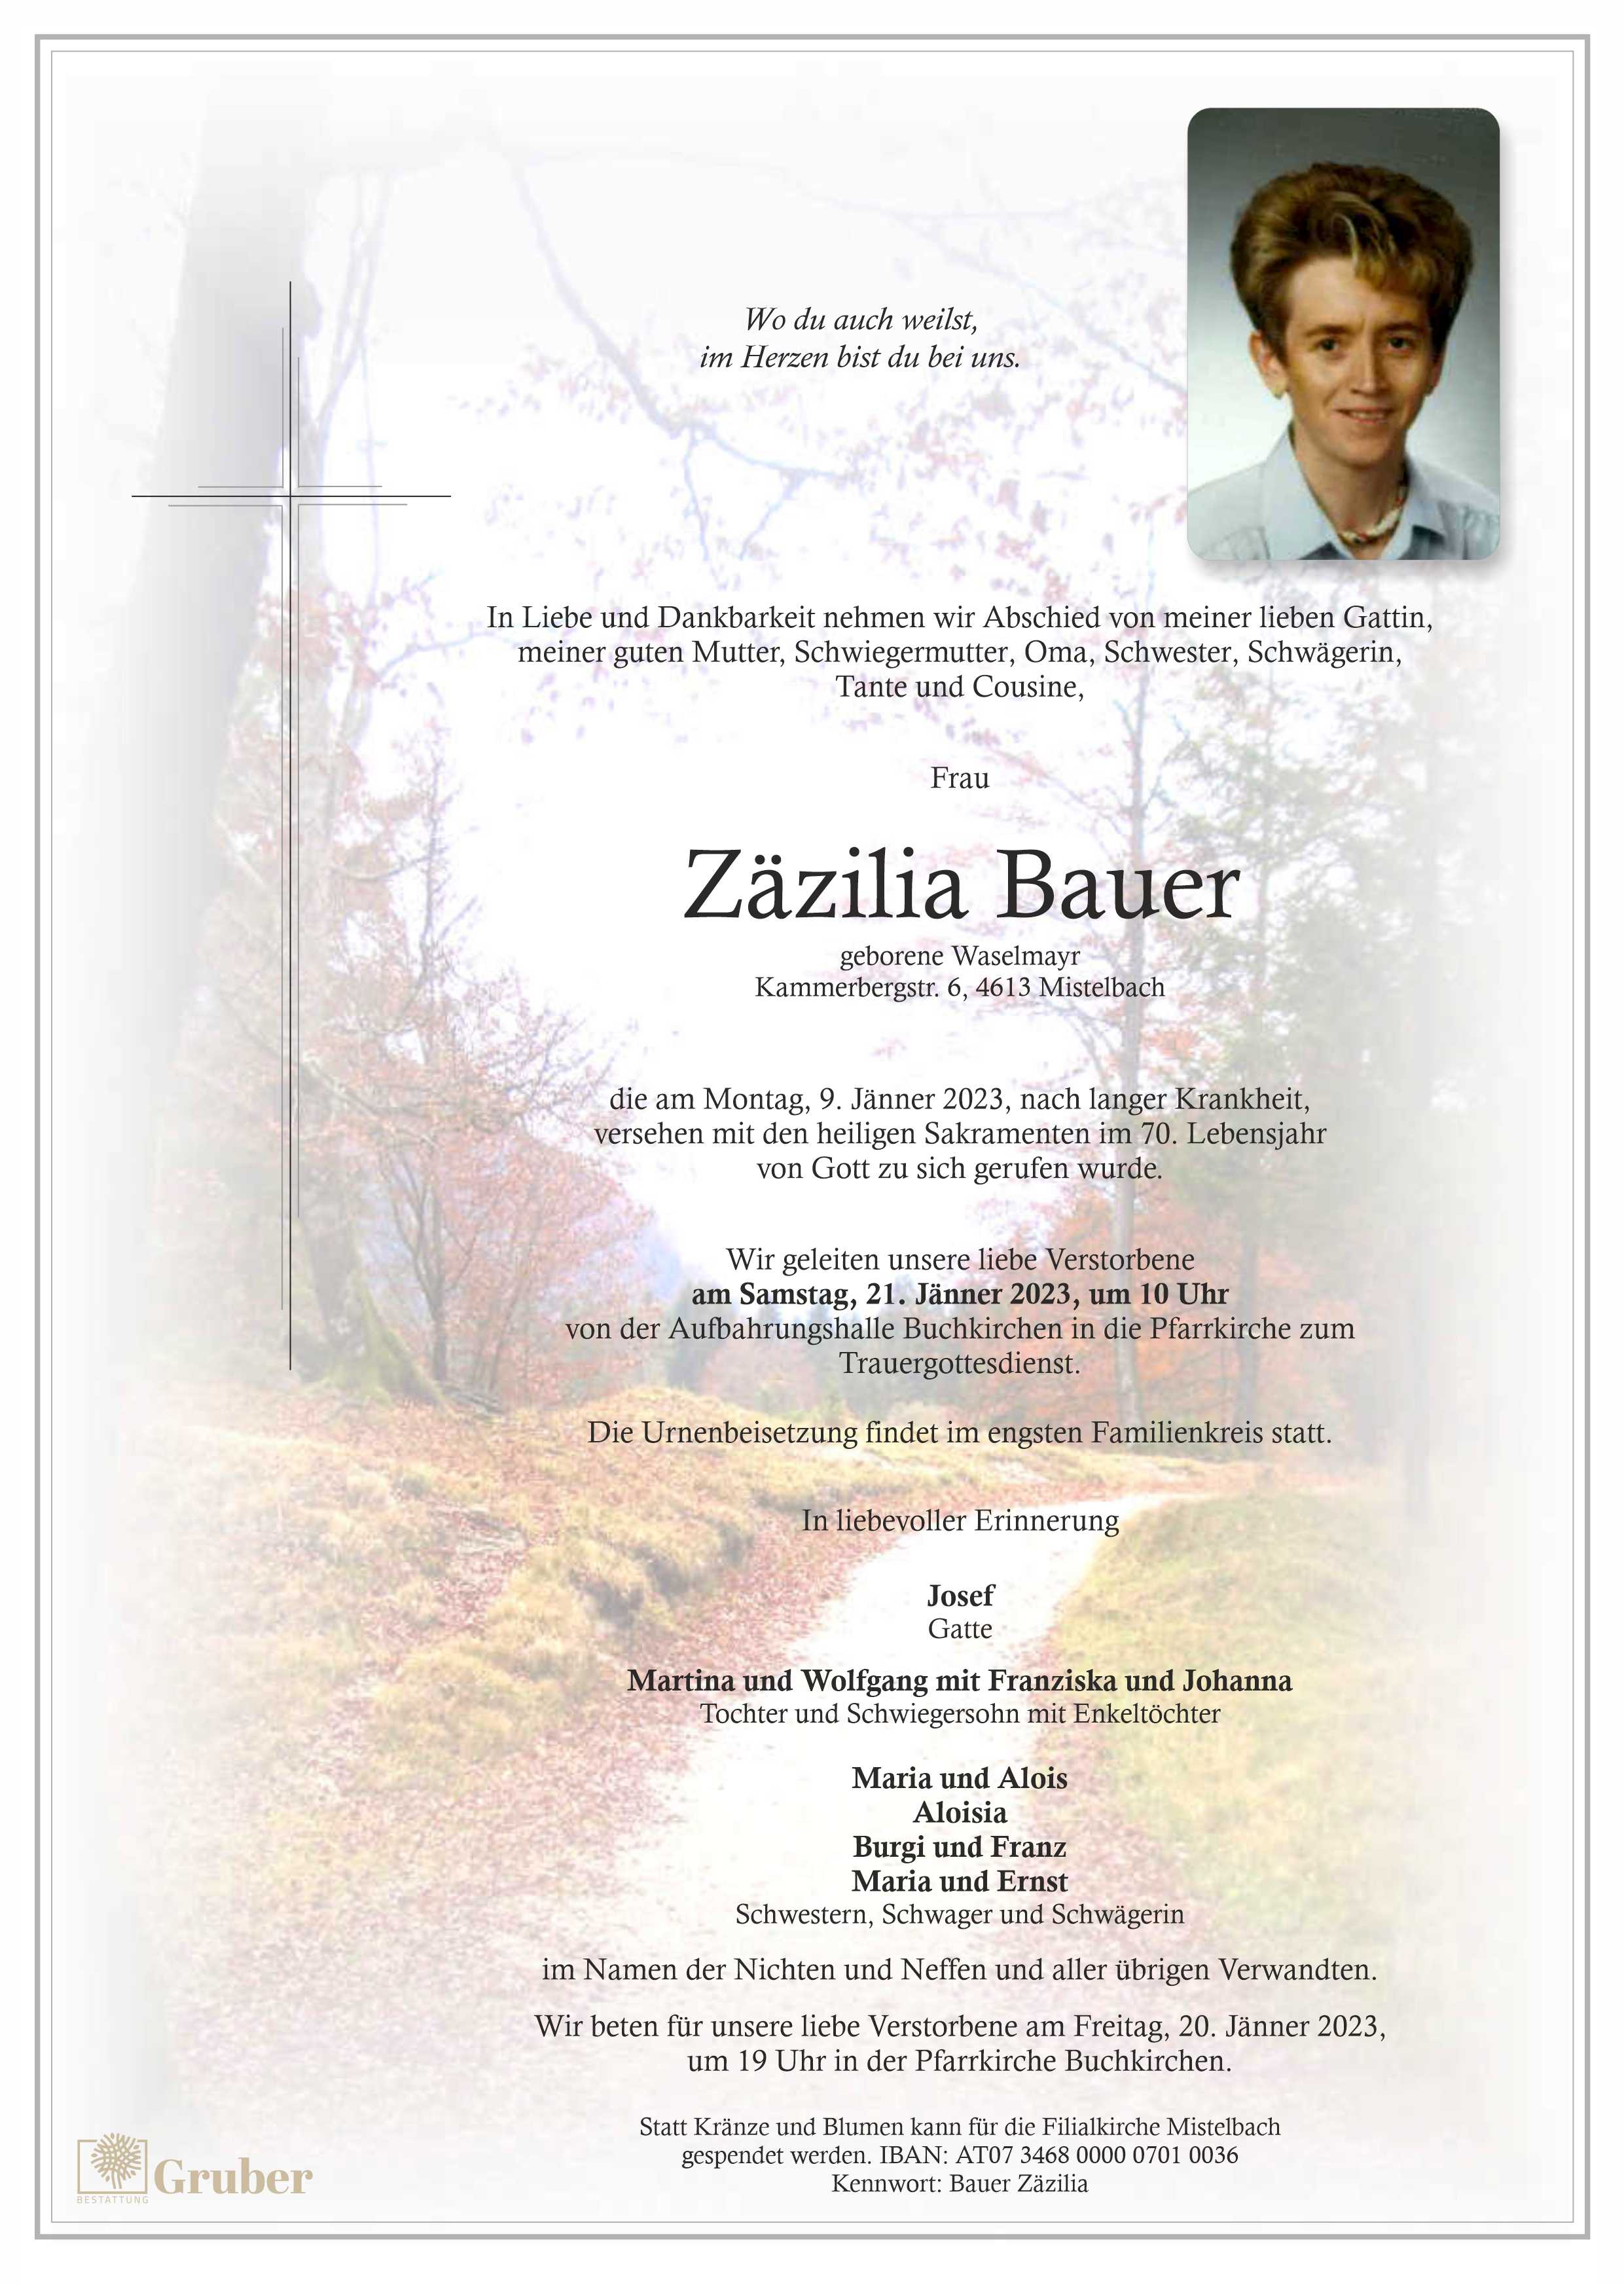 Zäzilia Bauer (Buchkirchen)